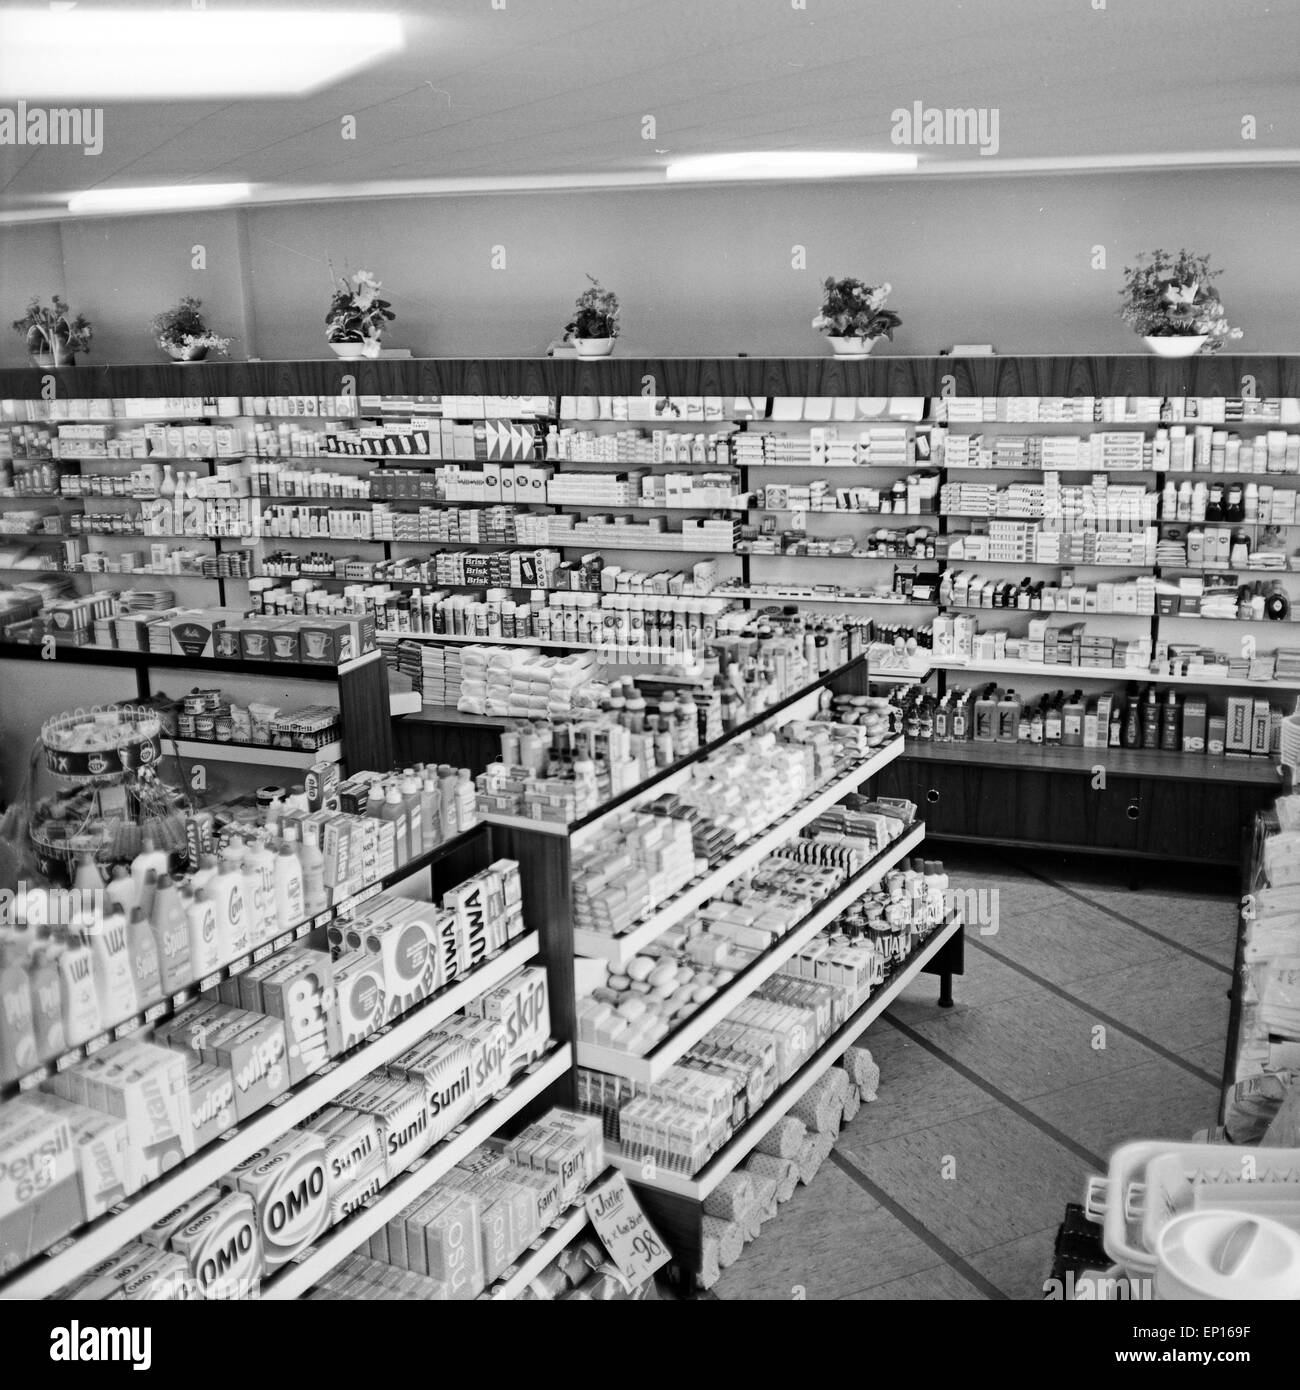 Volle Regale in Einer Drogerie in Hamburg, Deutschland, 1960er Jahre.  Gefüllte Regale in einer Apotheke in Hamburg, Deutschland 196  Stockfotografie - Alamy